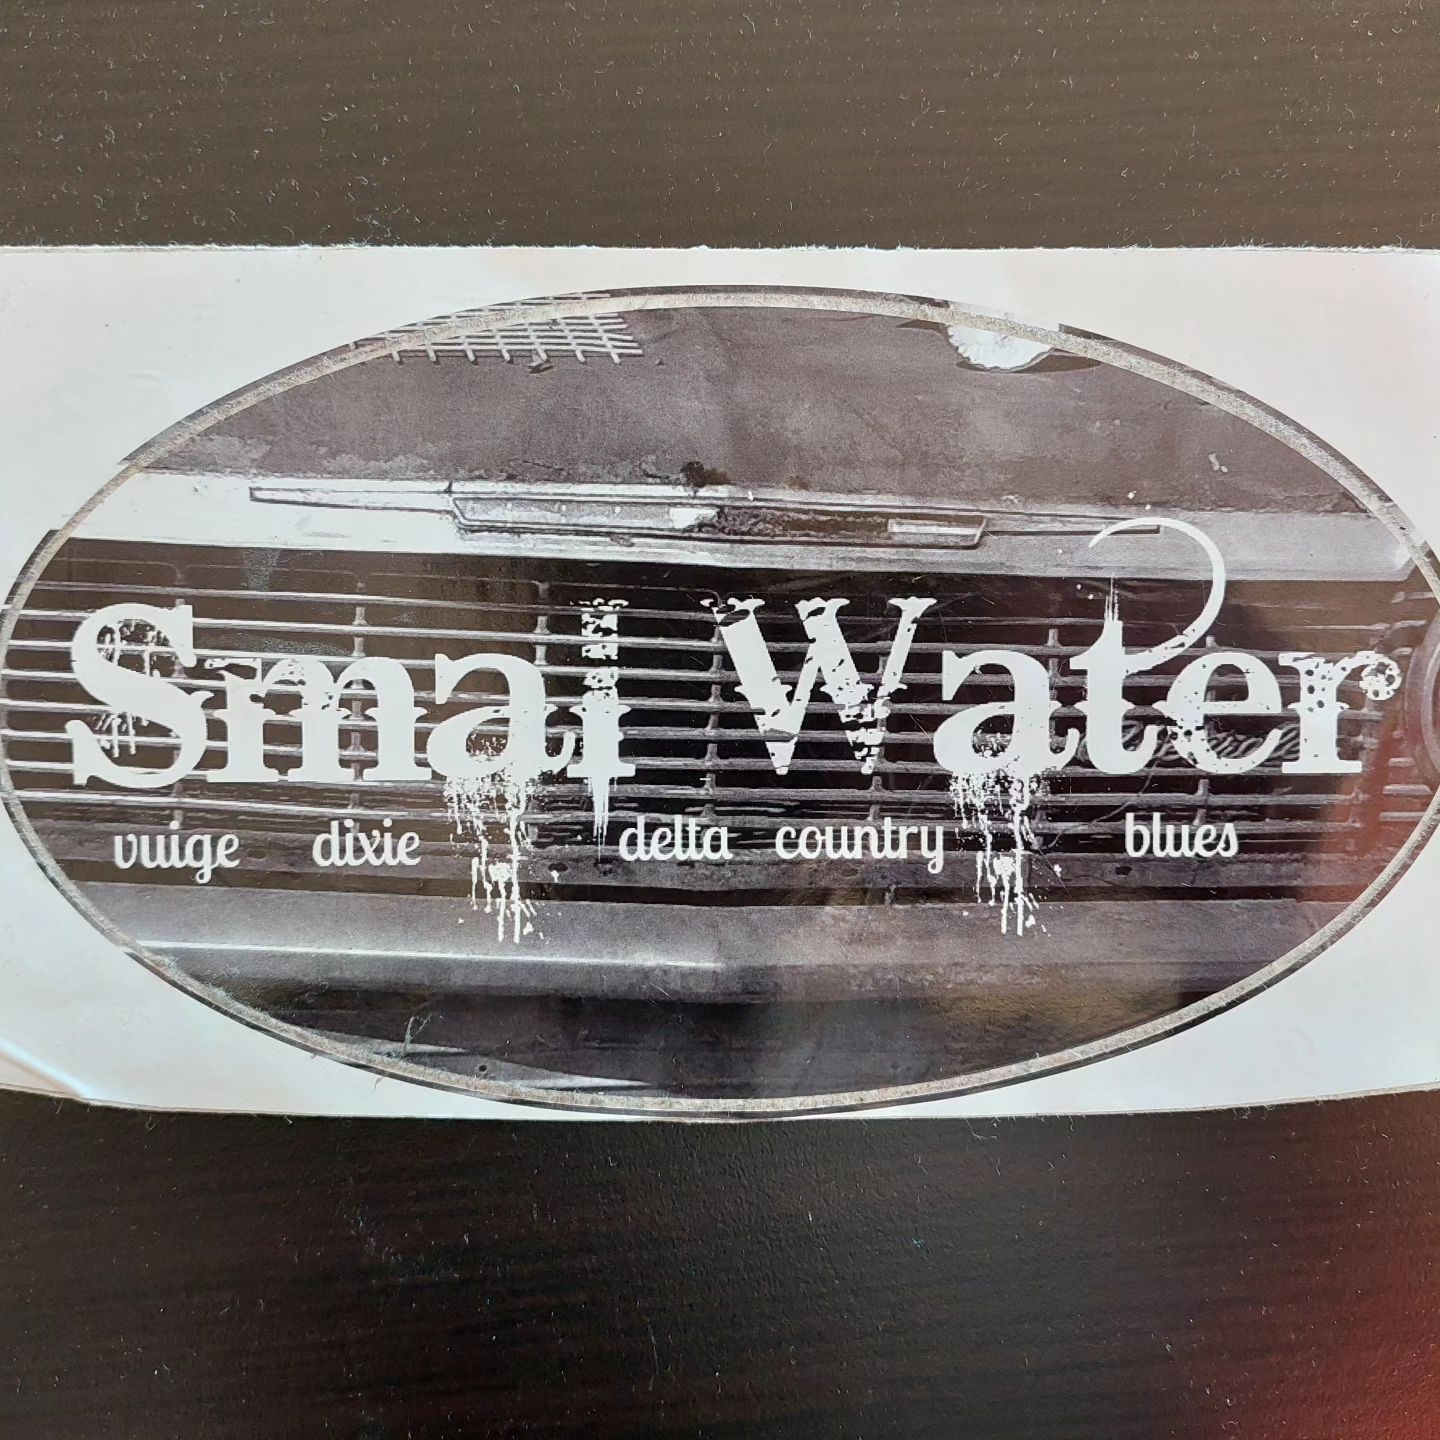 Smal Water & Dan German Live @Swaf